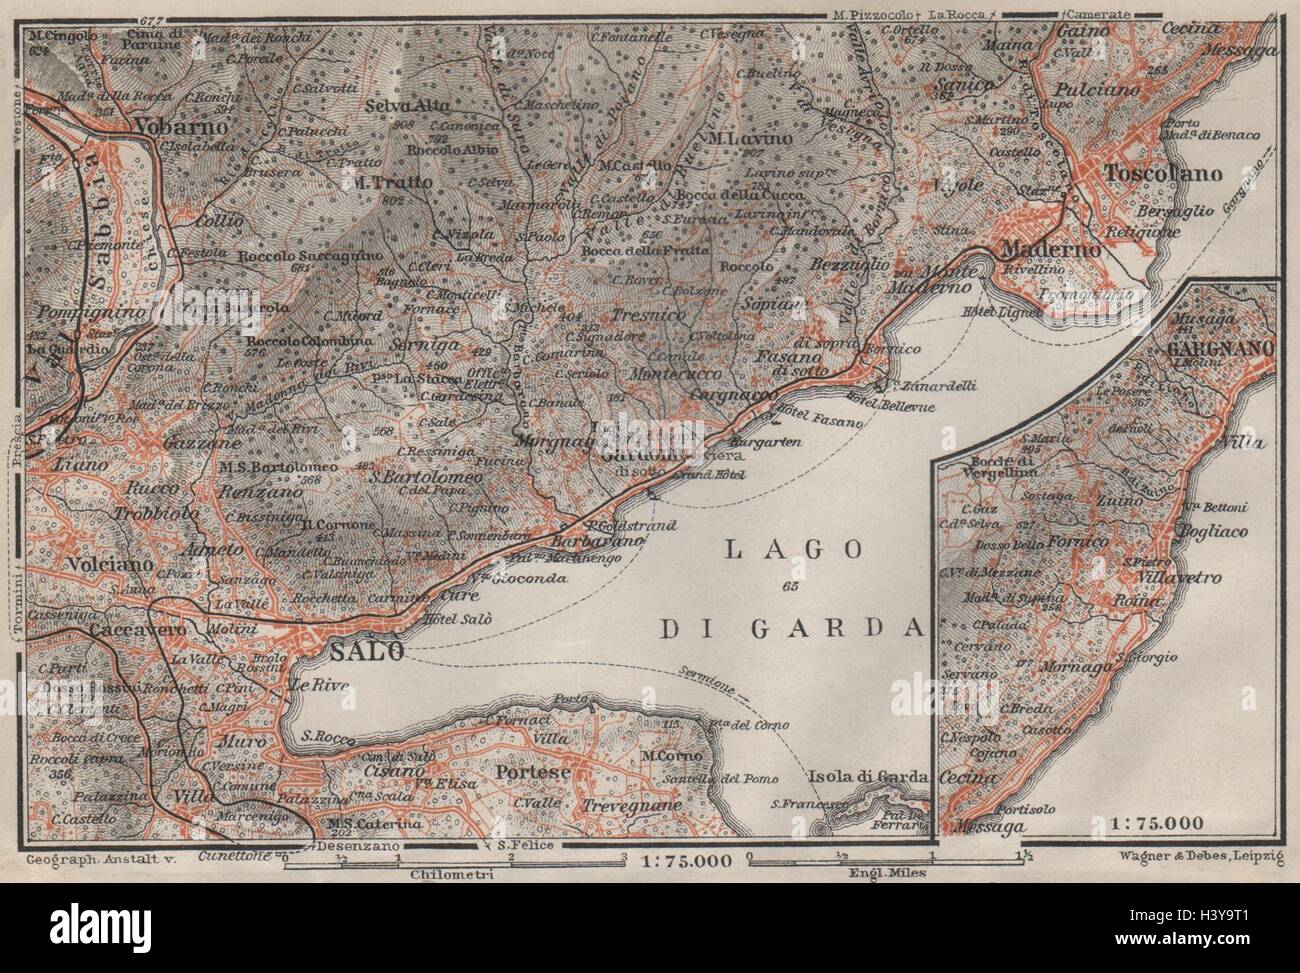 SALO MADERNO GARGNANO environs. Lago di/Lake Garda. Brescia. BAEDEKER 1906 map Stock Photo